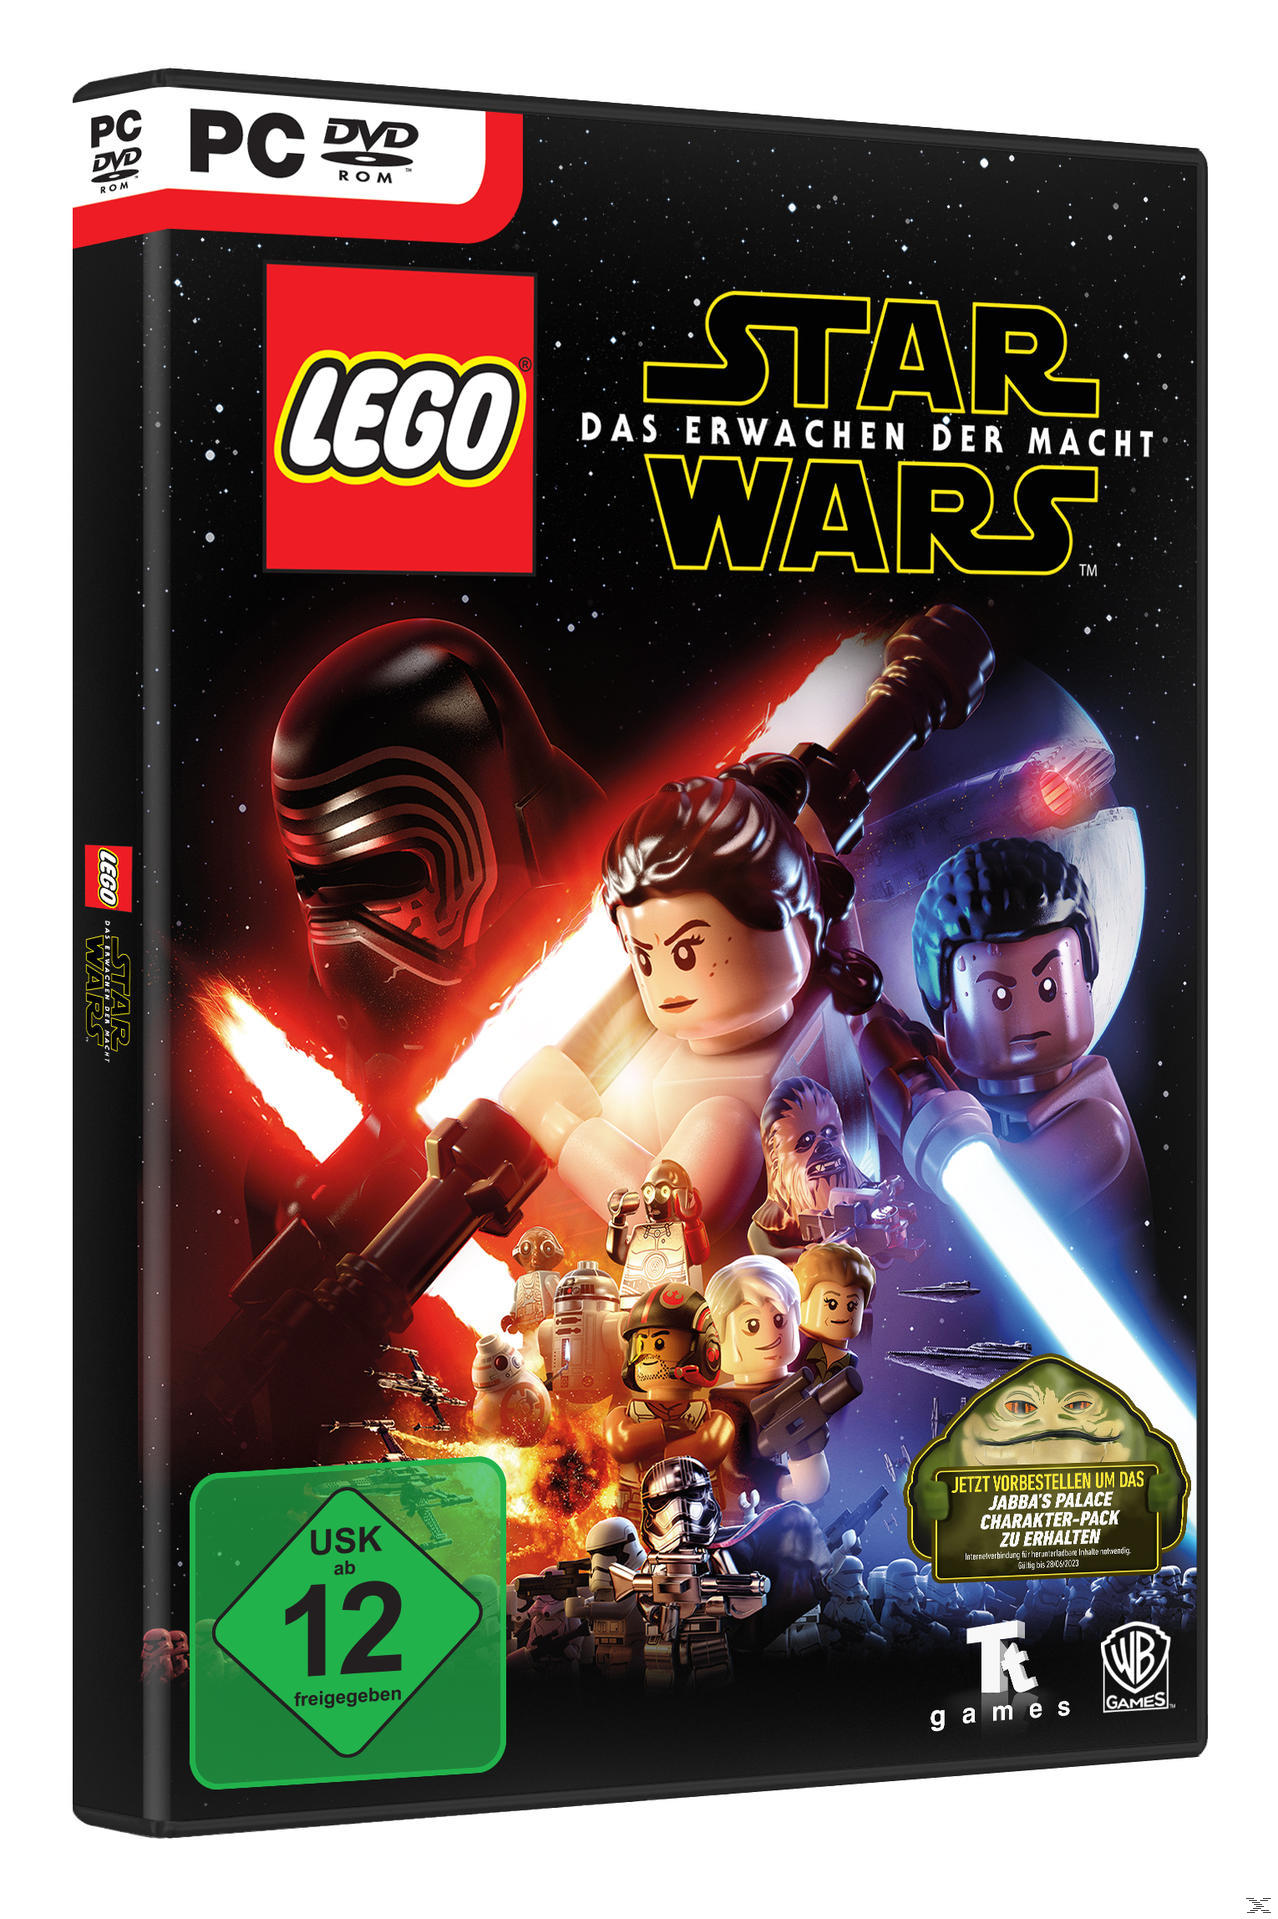 LEGO Erwachen Das Wars Macht [PC] - der Star -